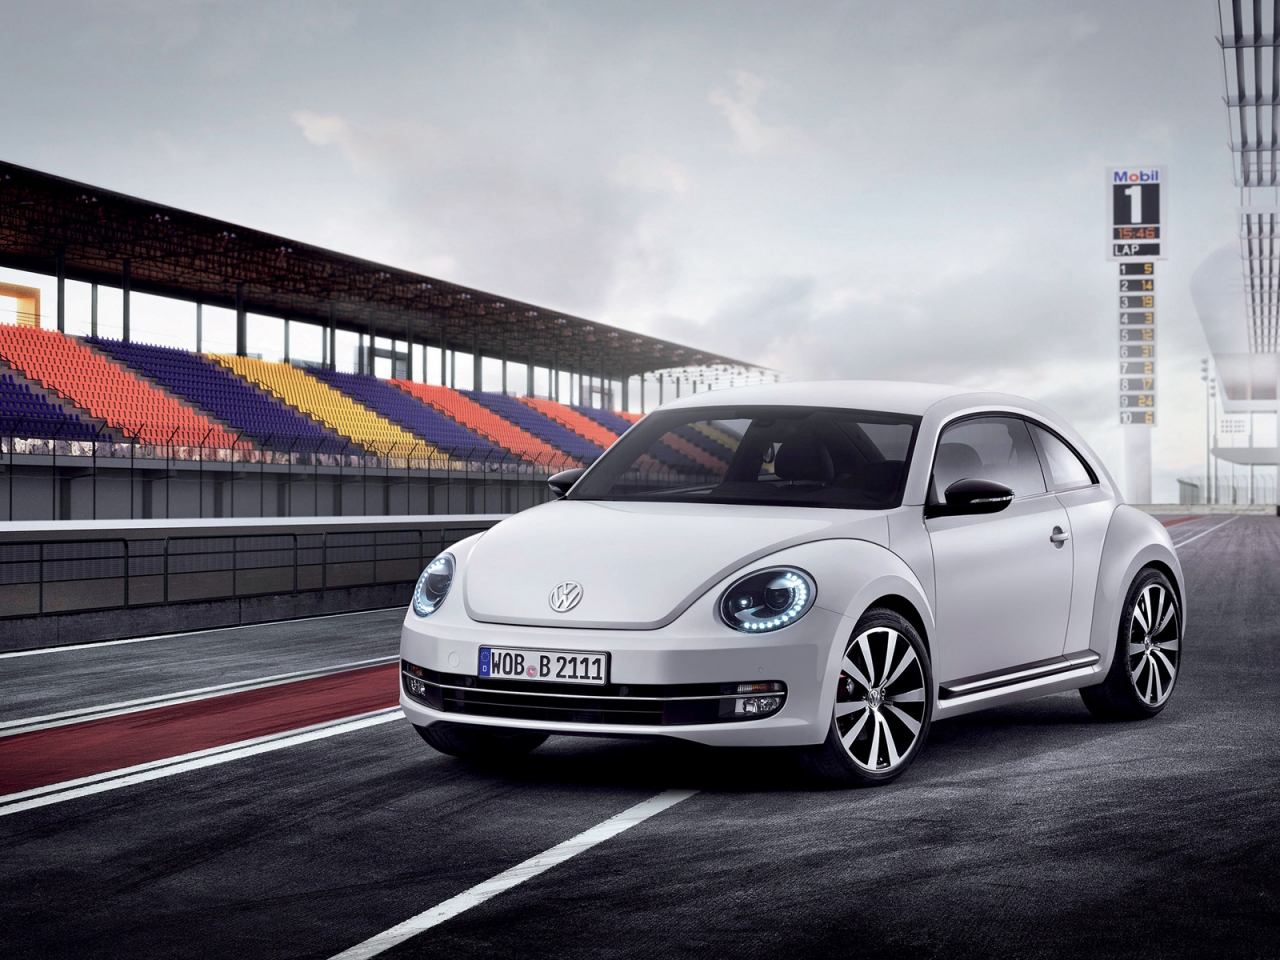 Volkswagen Beetle 2012 for 1280 x 960 resolution